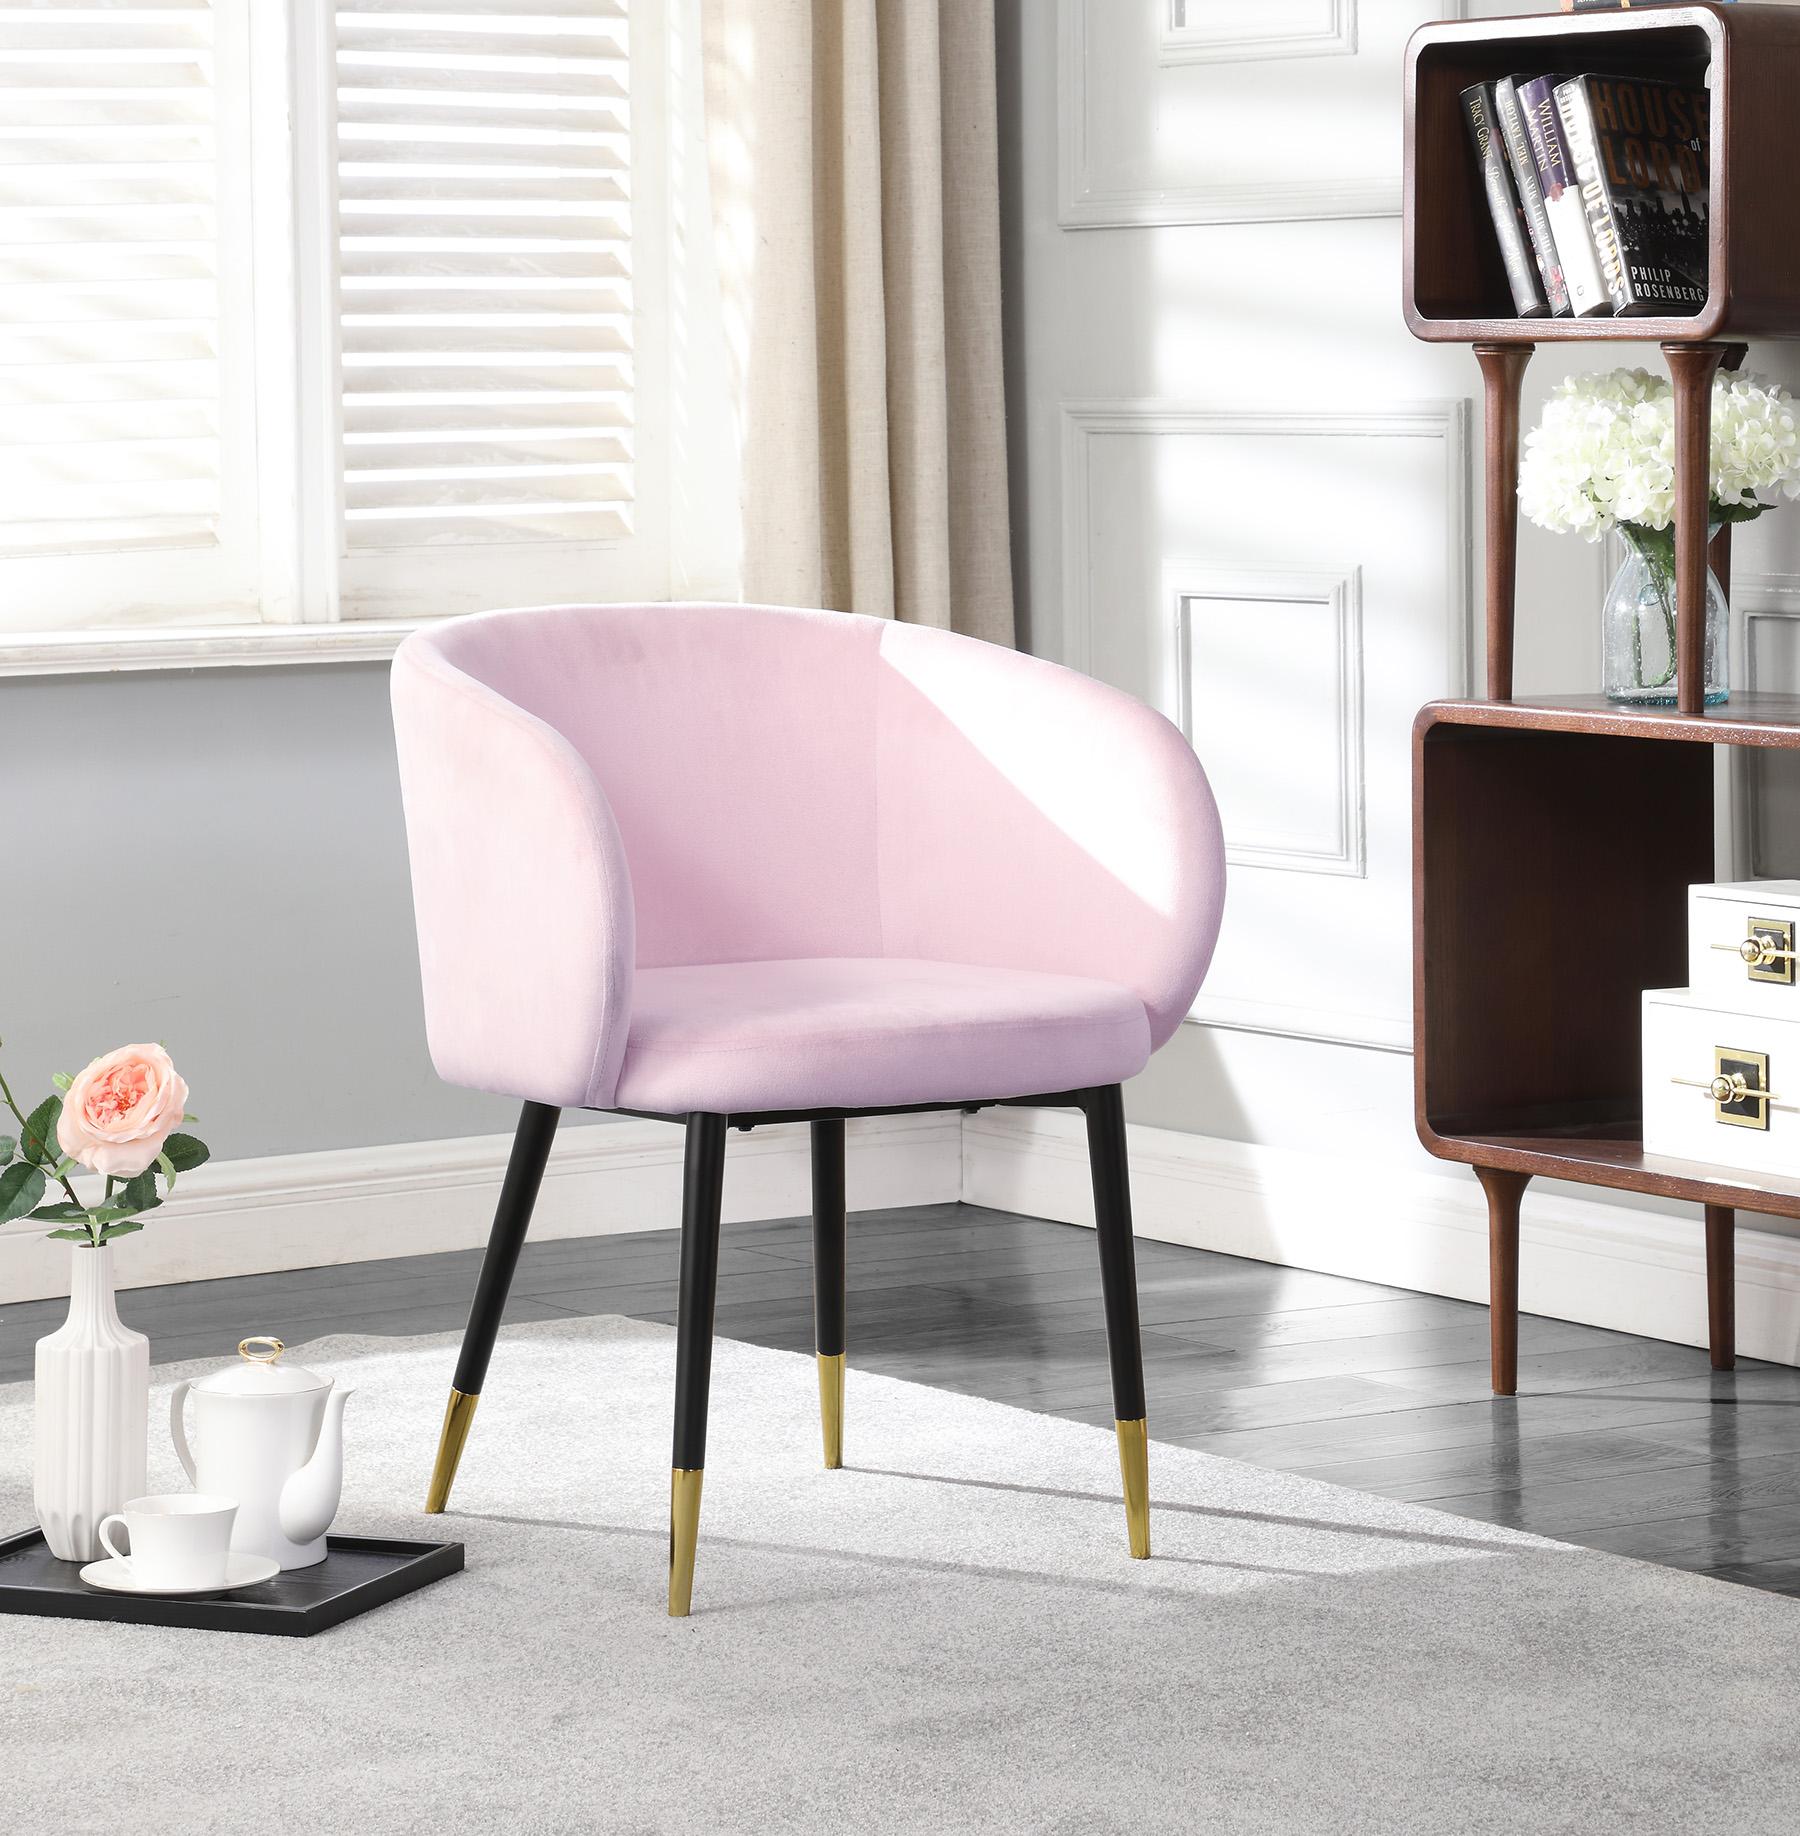 

    
Meridian Furniture LOUISE 733Pink Dining Chair Set Chrome/Pink 733Pink-C-Set-2
